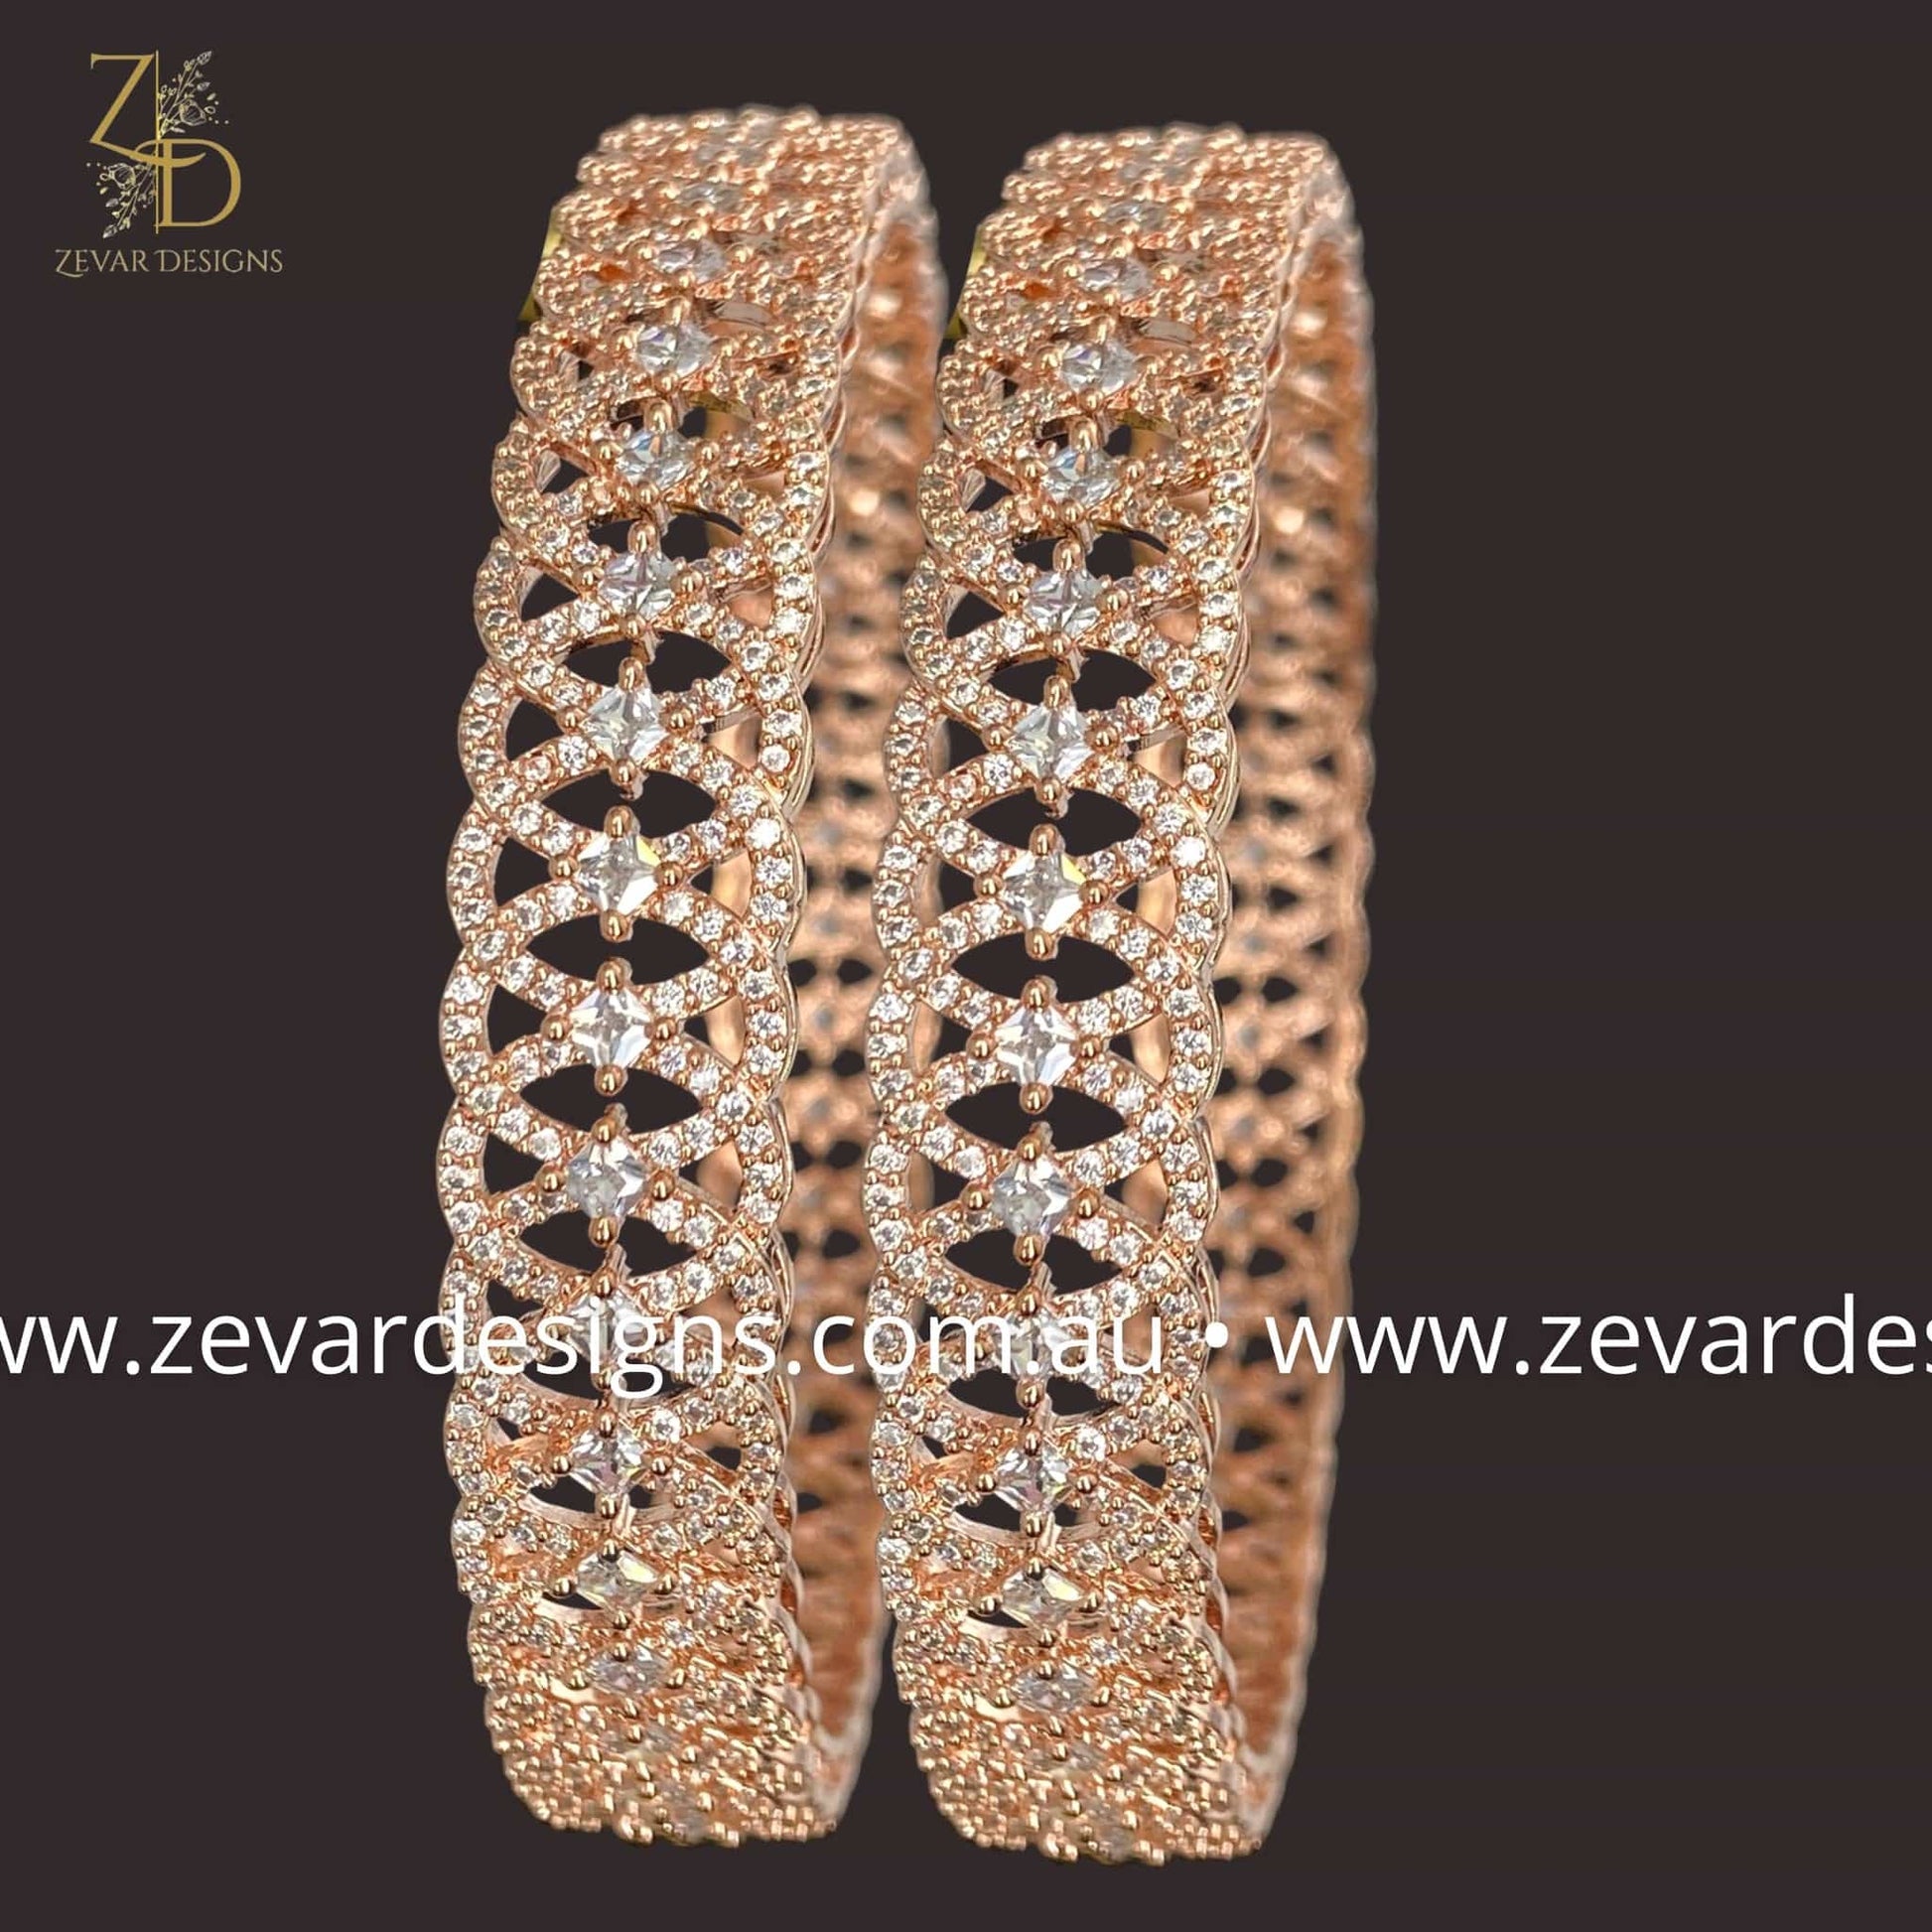 Zevar Designs Bangles & Bracelets - AD AD Bangles - Rose Gold